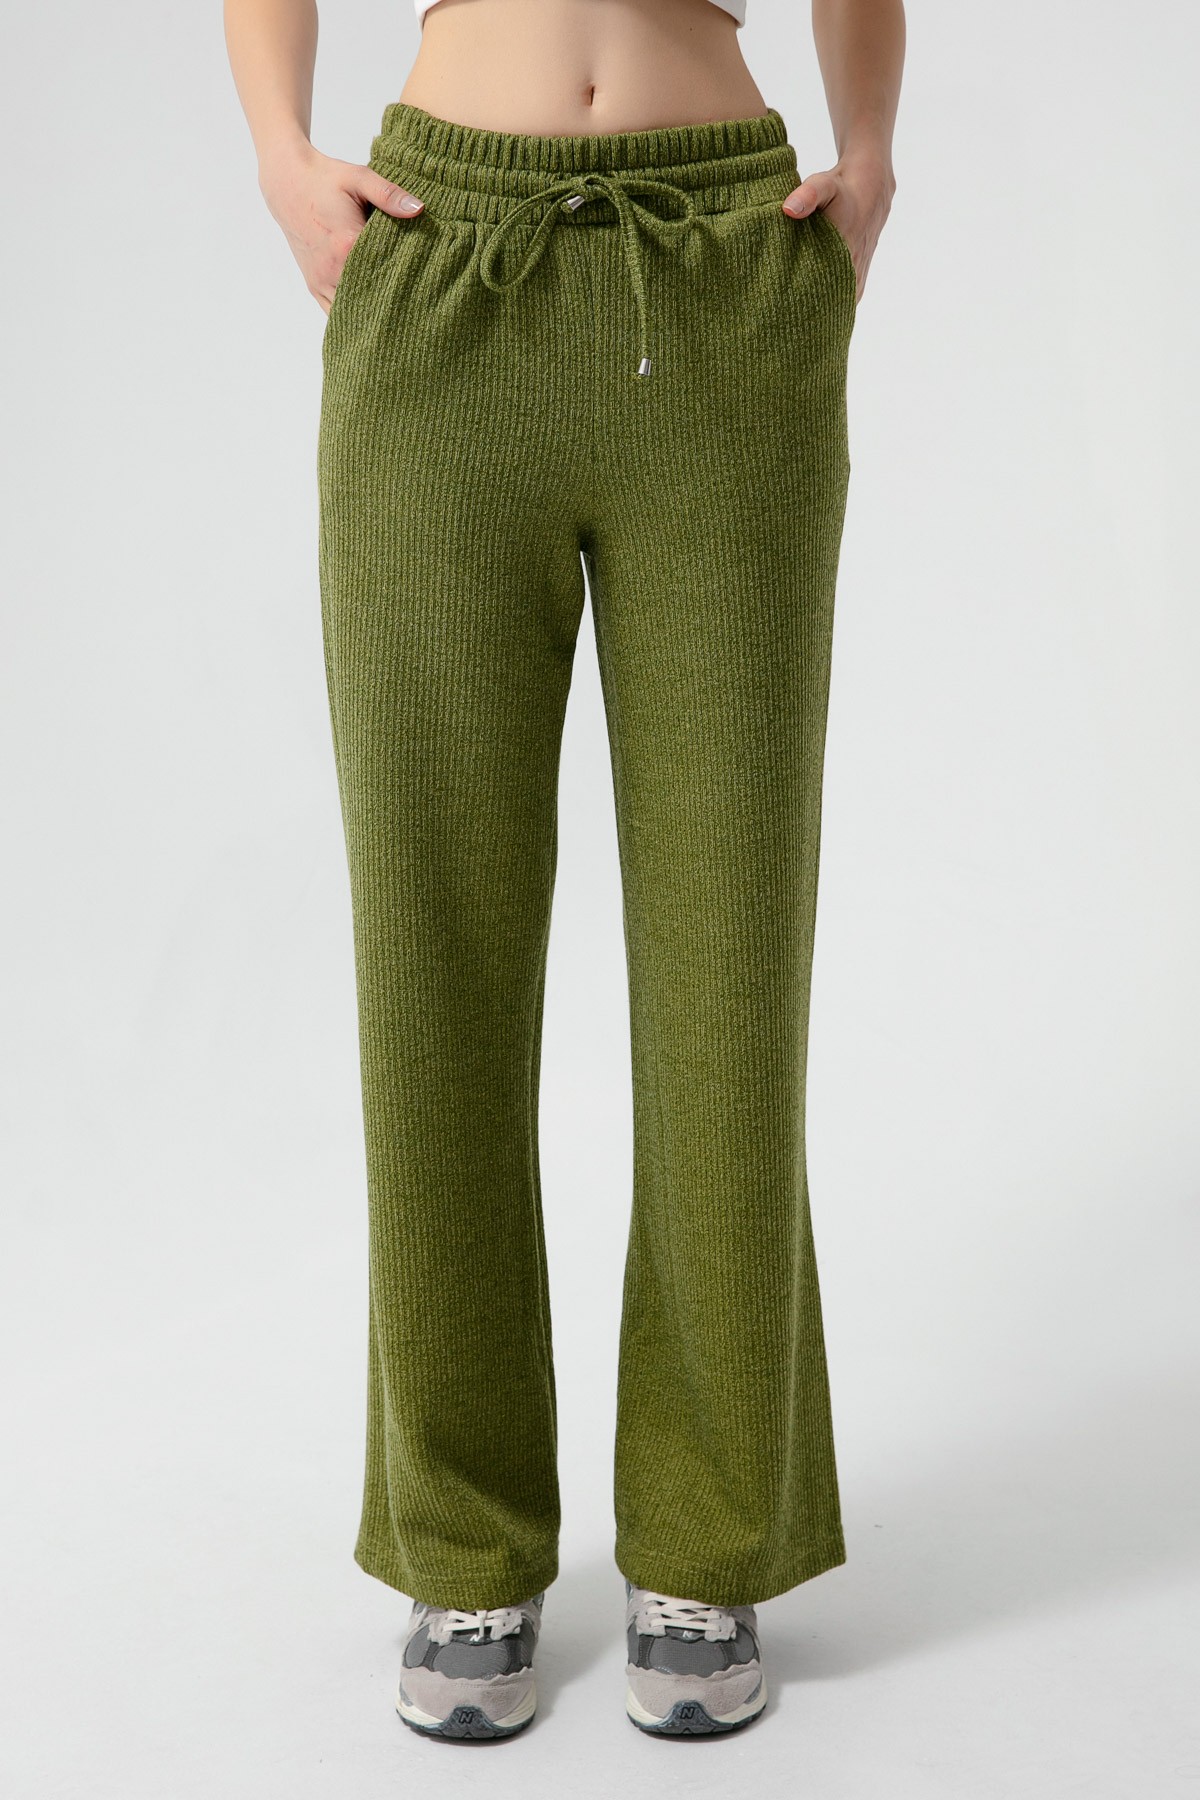 Kadın Beli Lastikli Örme Pantolon - Yeşil